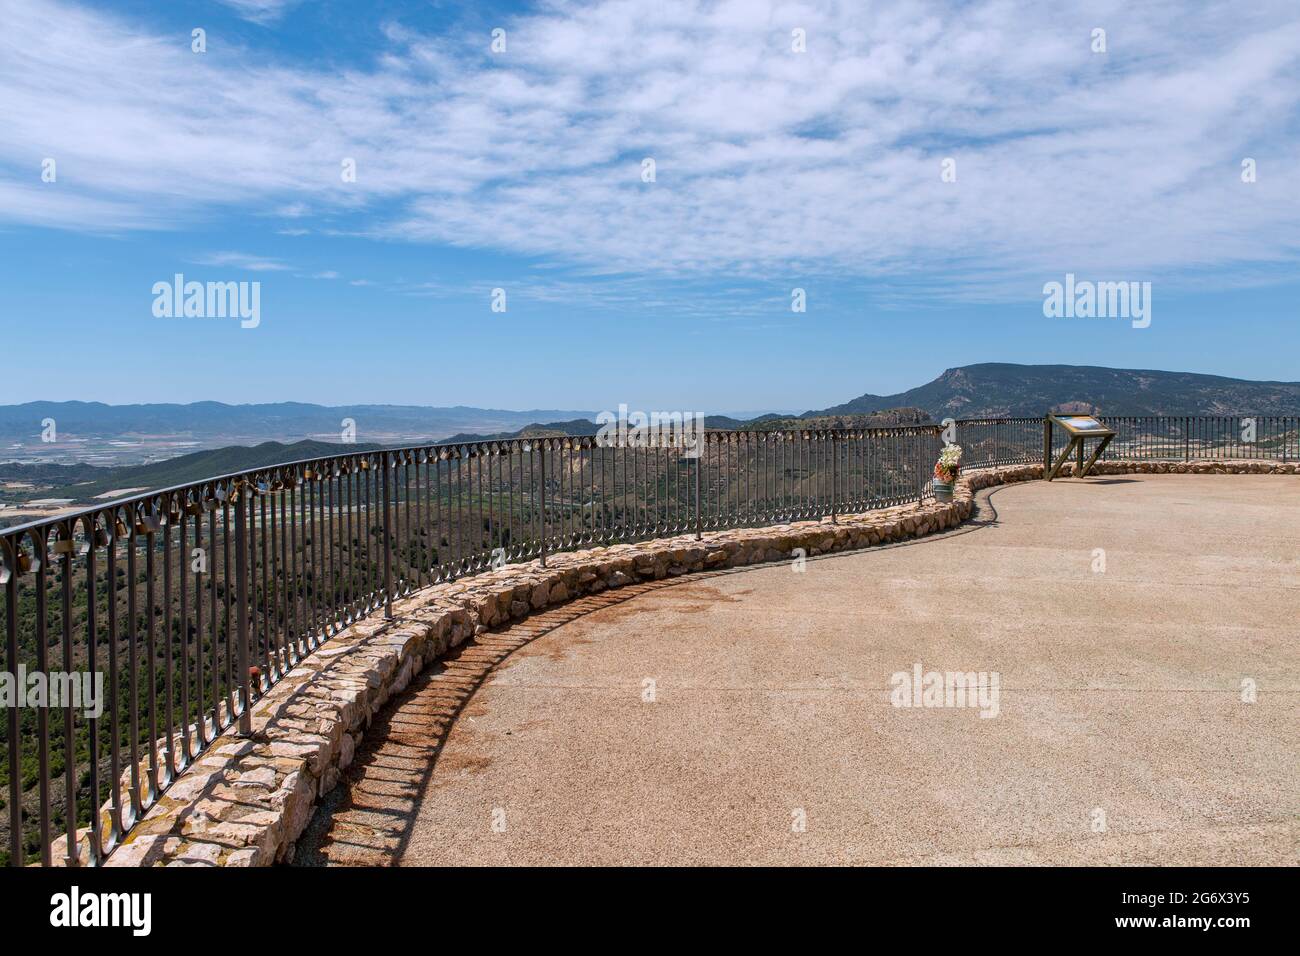 Mirador llamado el balcón en Totana, Murcia, España, grandes y espaectaculares vistas a través del valle y pueblos de la zona. Foto de stock